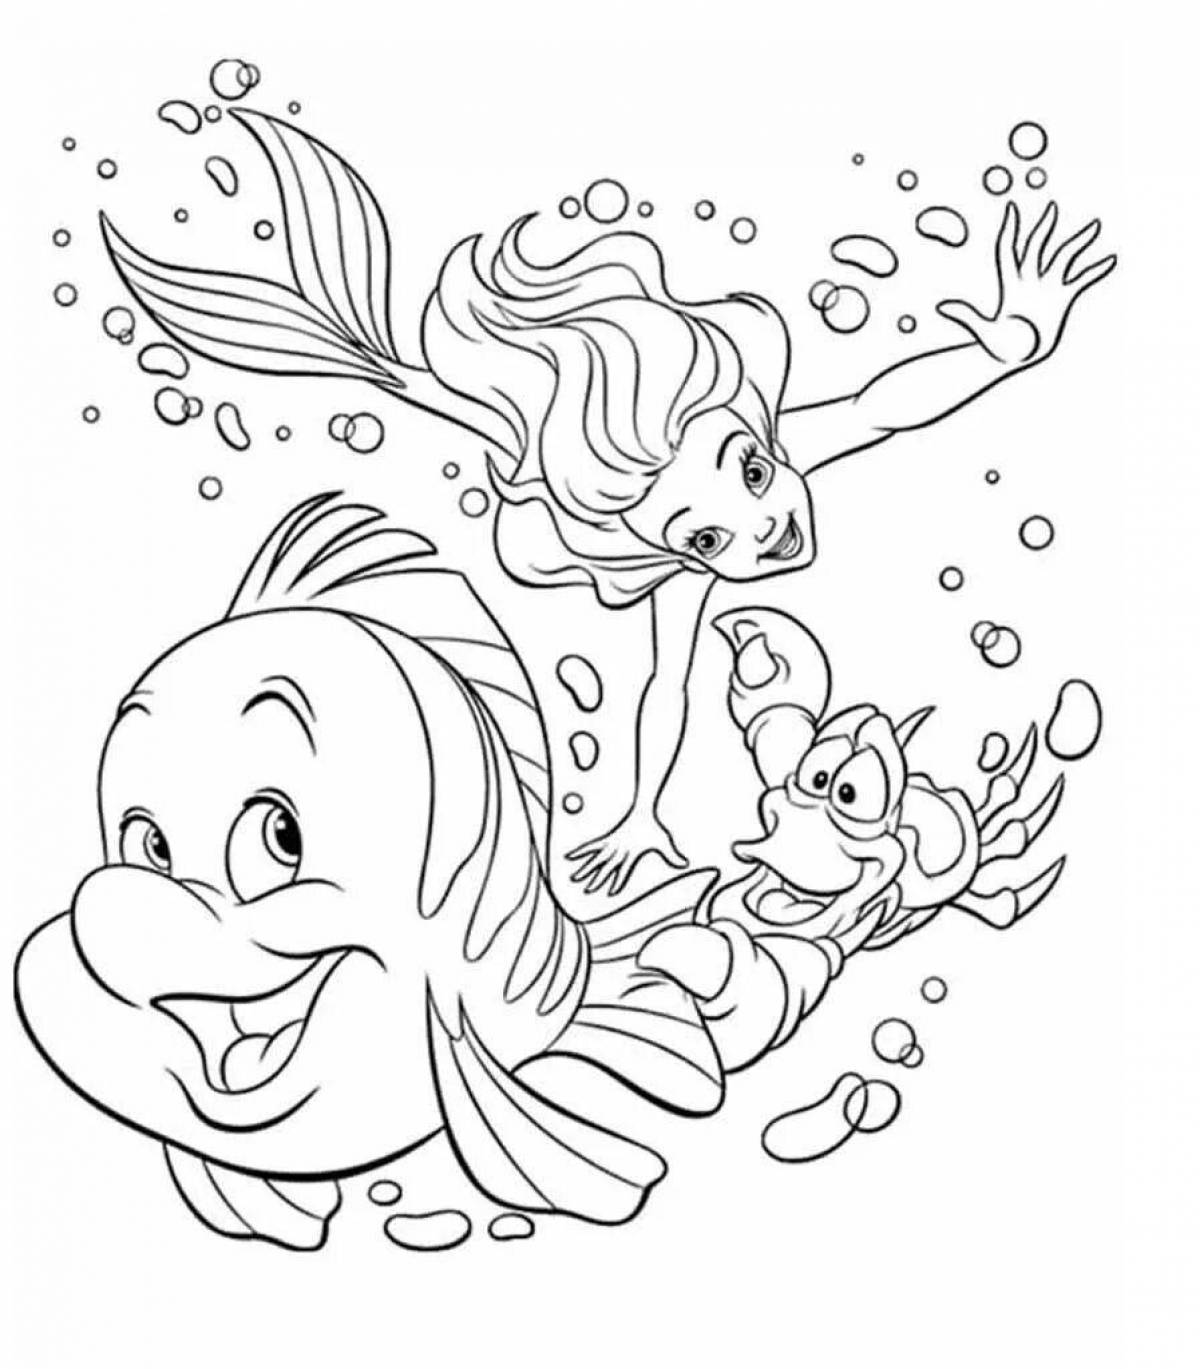 Disney little mermaid coloring book